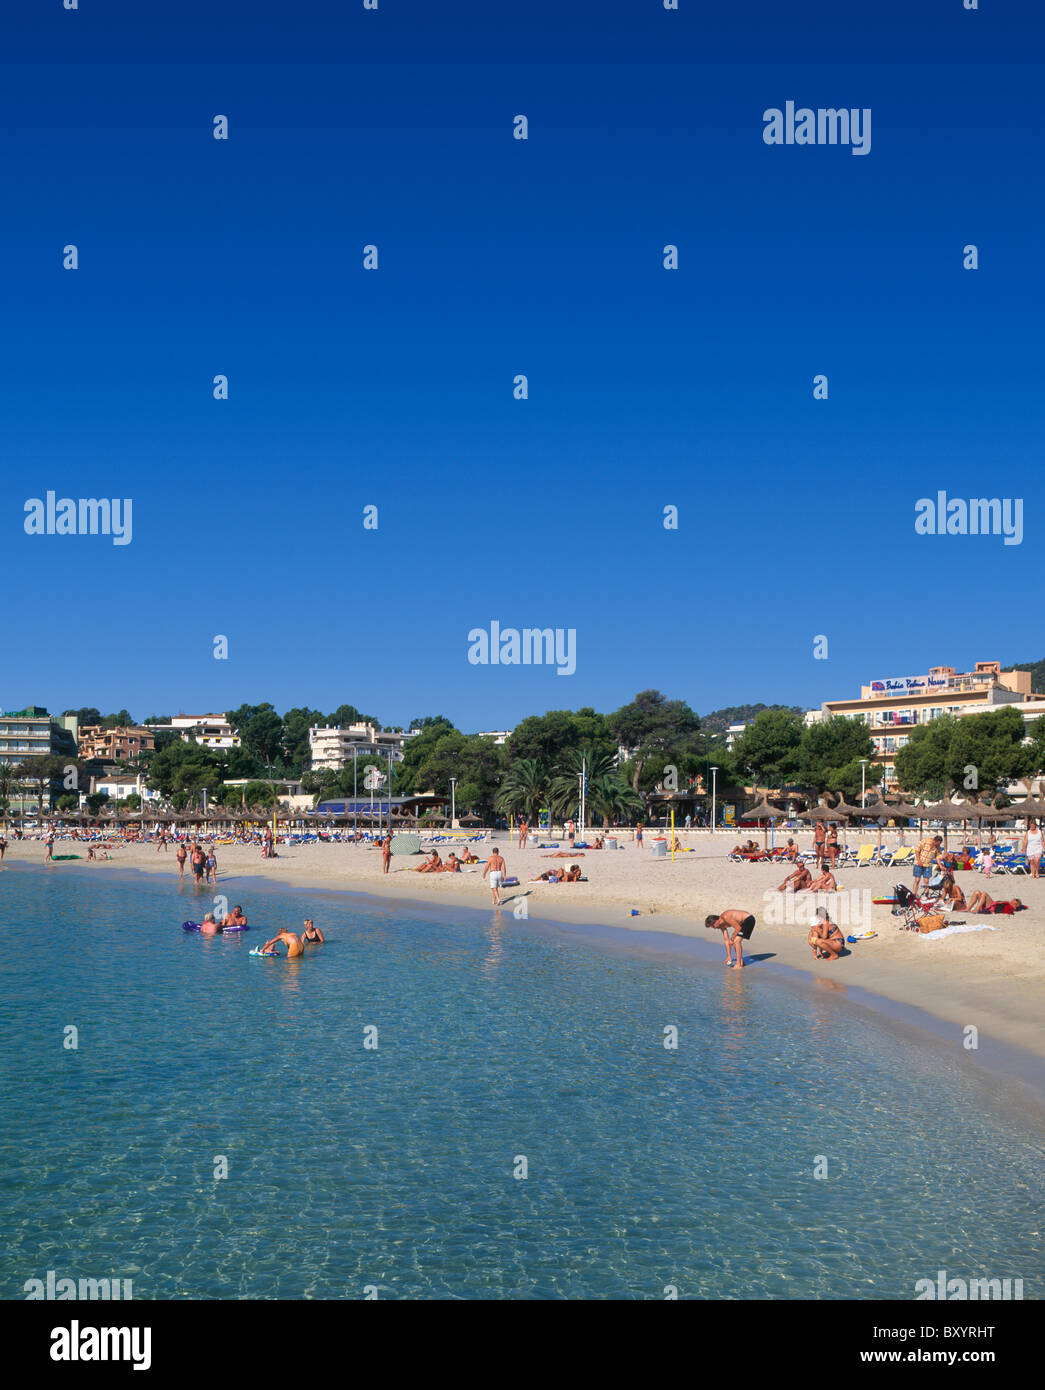 Palma Nova Beach, Majorca, Balearics, Spain Stock Photo